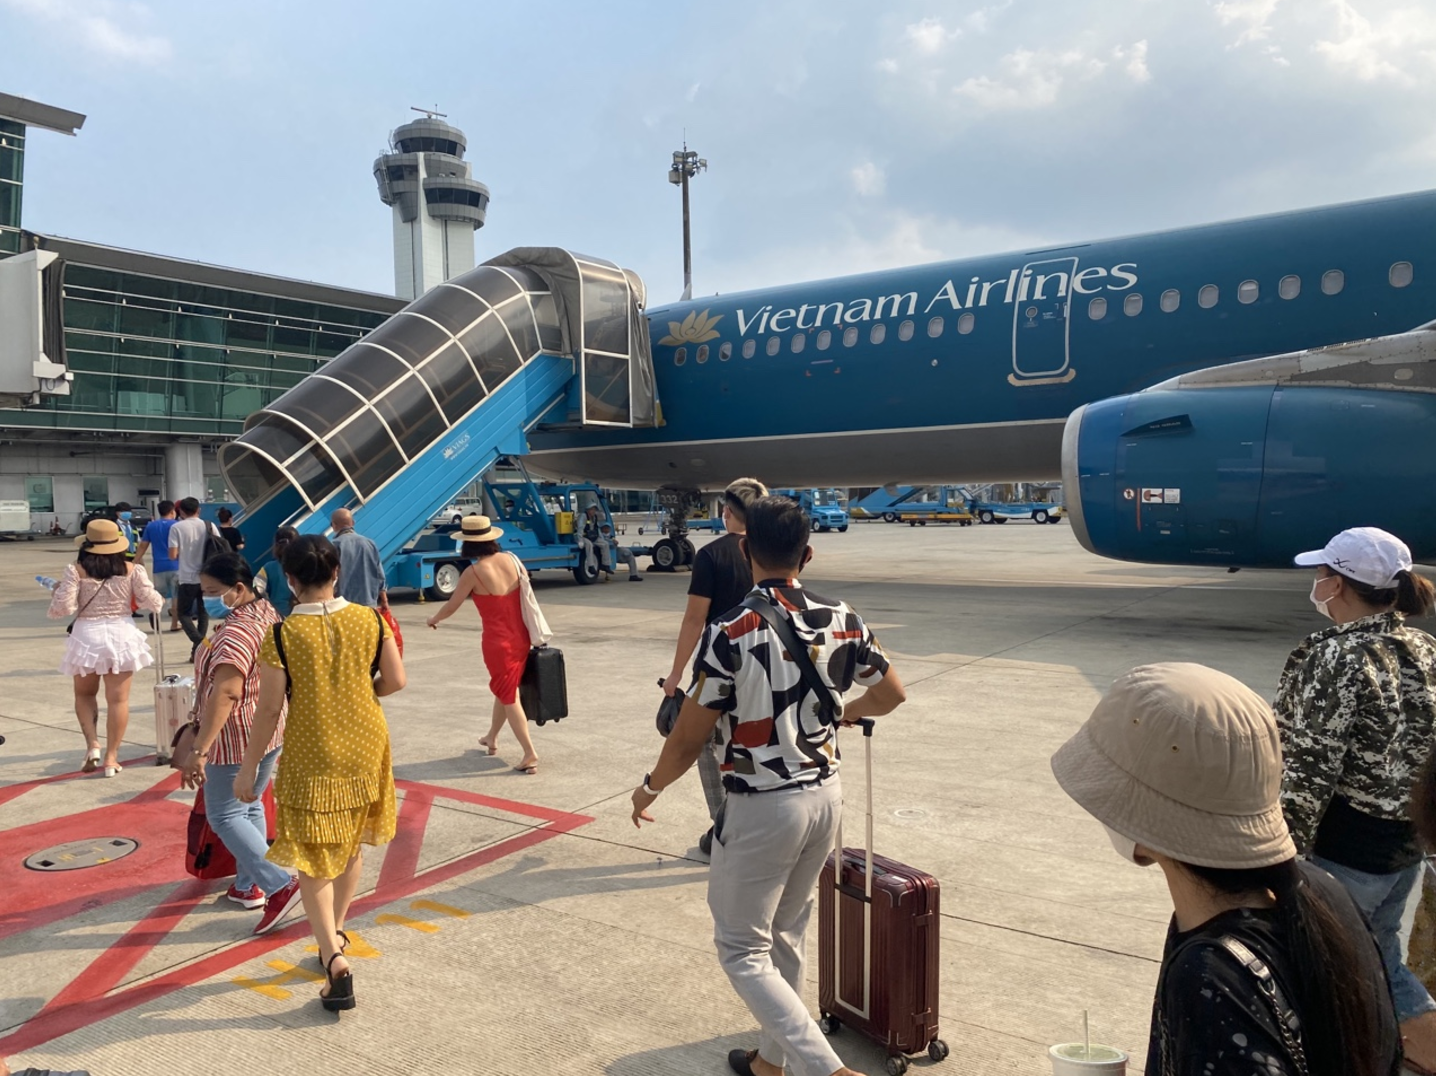 Vietnam Airlines: Thương hiệu Vietnam Airlines luôn tựa nơi giữa bầu trời với các chuyến bay hiện đại, tiện nghi và đội ngũ nhân viên chuyên nghiệp. Cùng xem qua các hình ảnh về giá vé ưu đãi và các dịch vụ tốt nhất của Vietnam Airlines để chuẩn bị cho chuyến đi hoàn hảo.